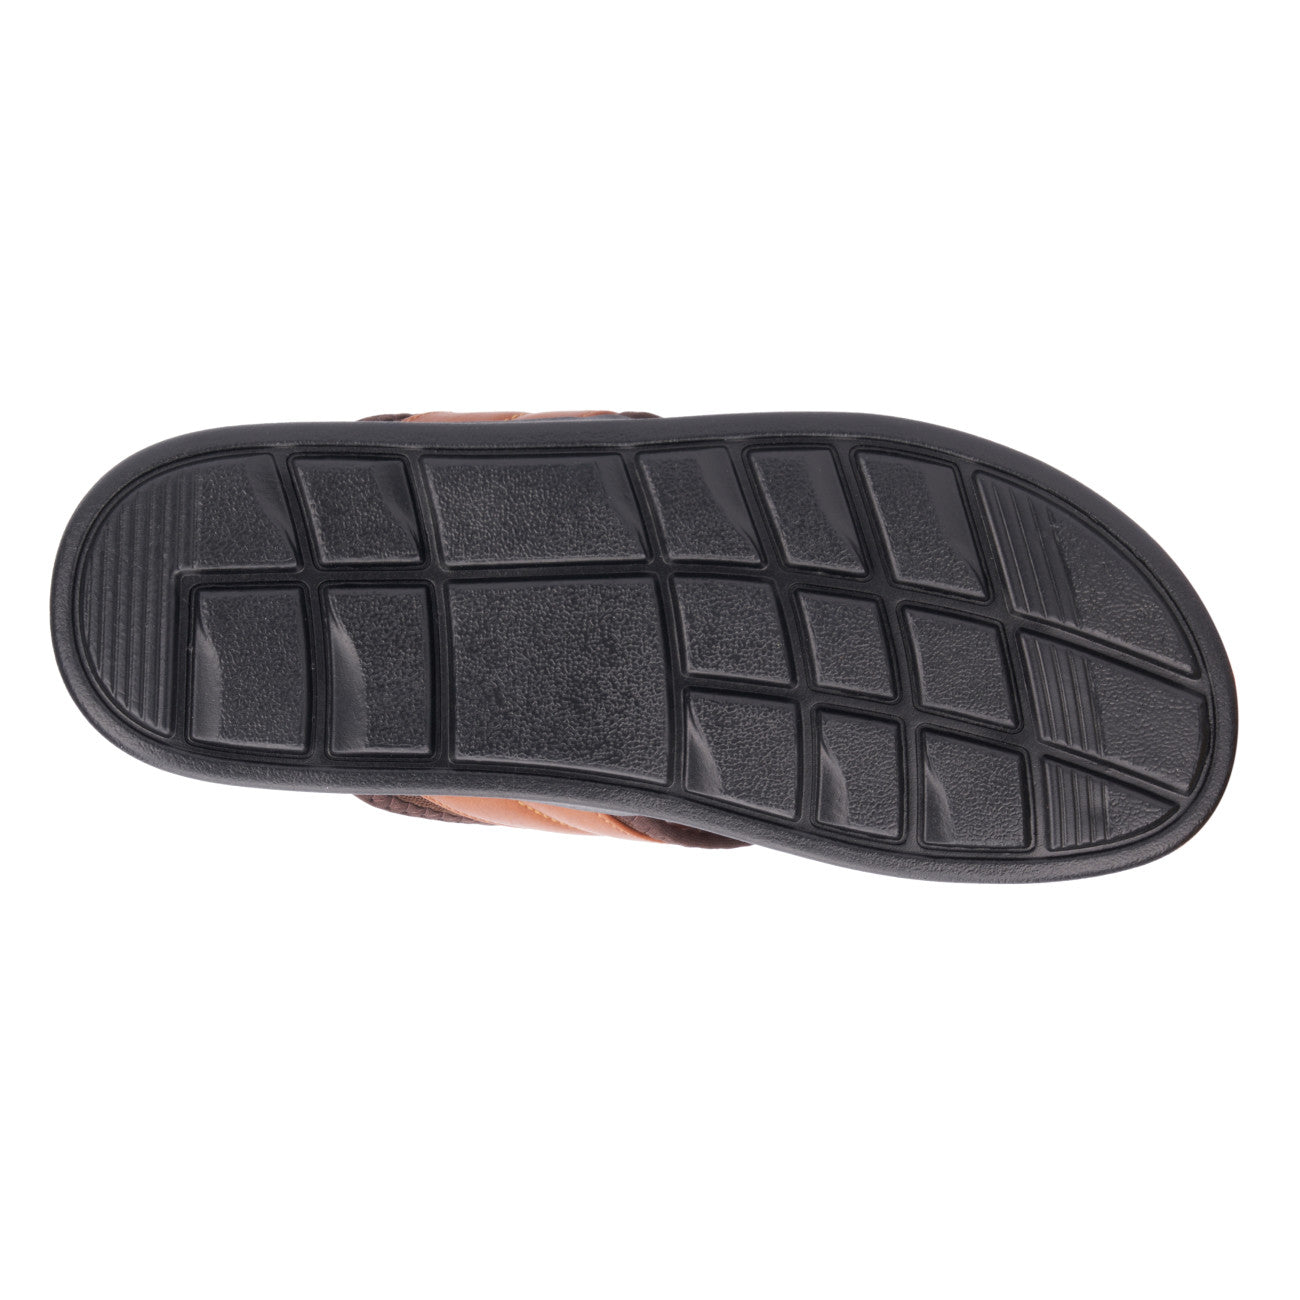 New York & Company Men's Maxx Flip-Flop Sandals